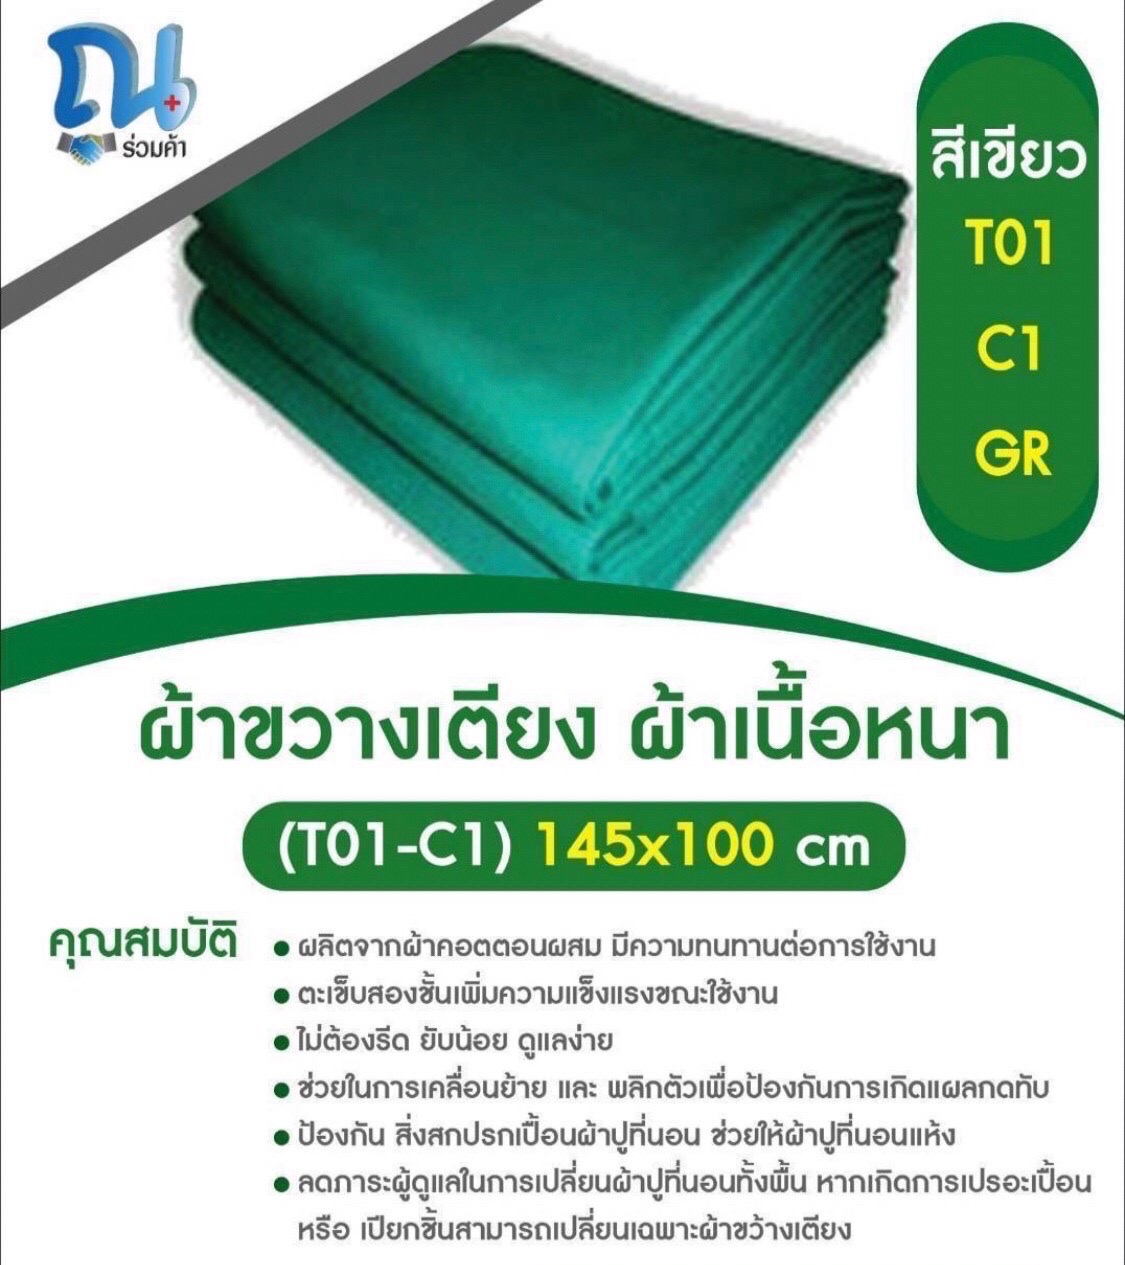 ผ้าขวางเตียงผู้ป่วย รุ่น T01-E1-GR SIZE 145X100CM สีเขียว